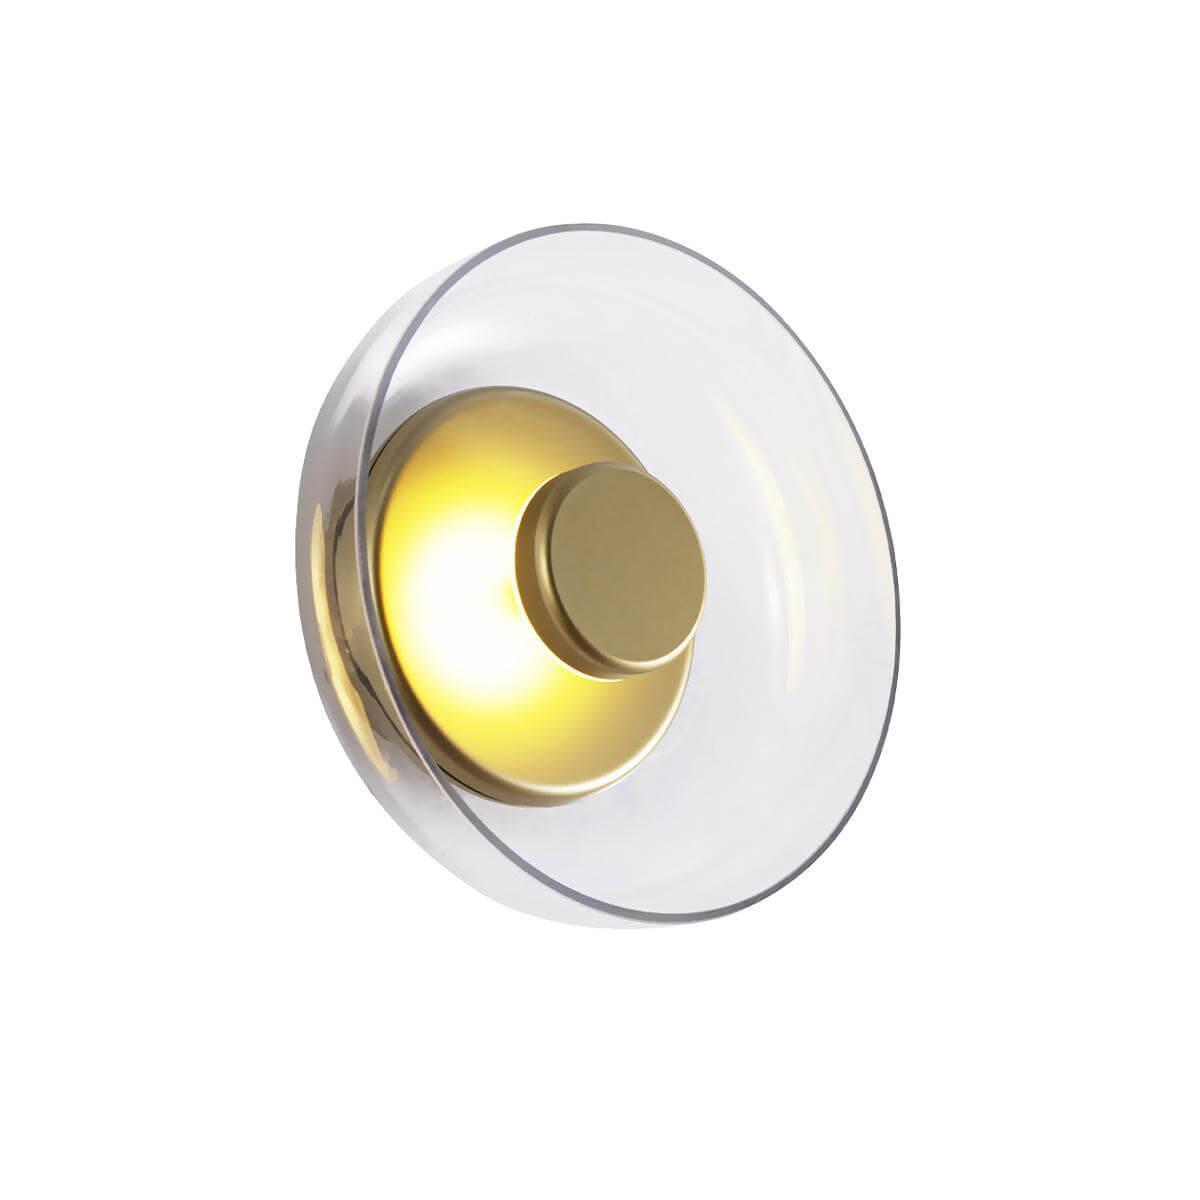 Настенный светодиодный светильник Loft IT Disk 8210-W настенный светодиодный светильник designled gw brick gw 8210 5 bl ww 001551